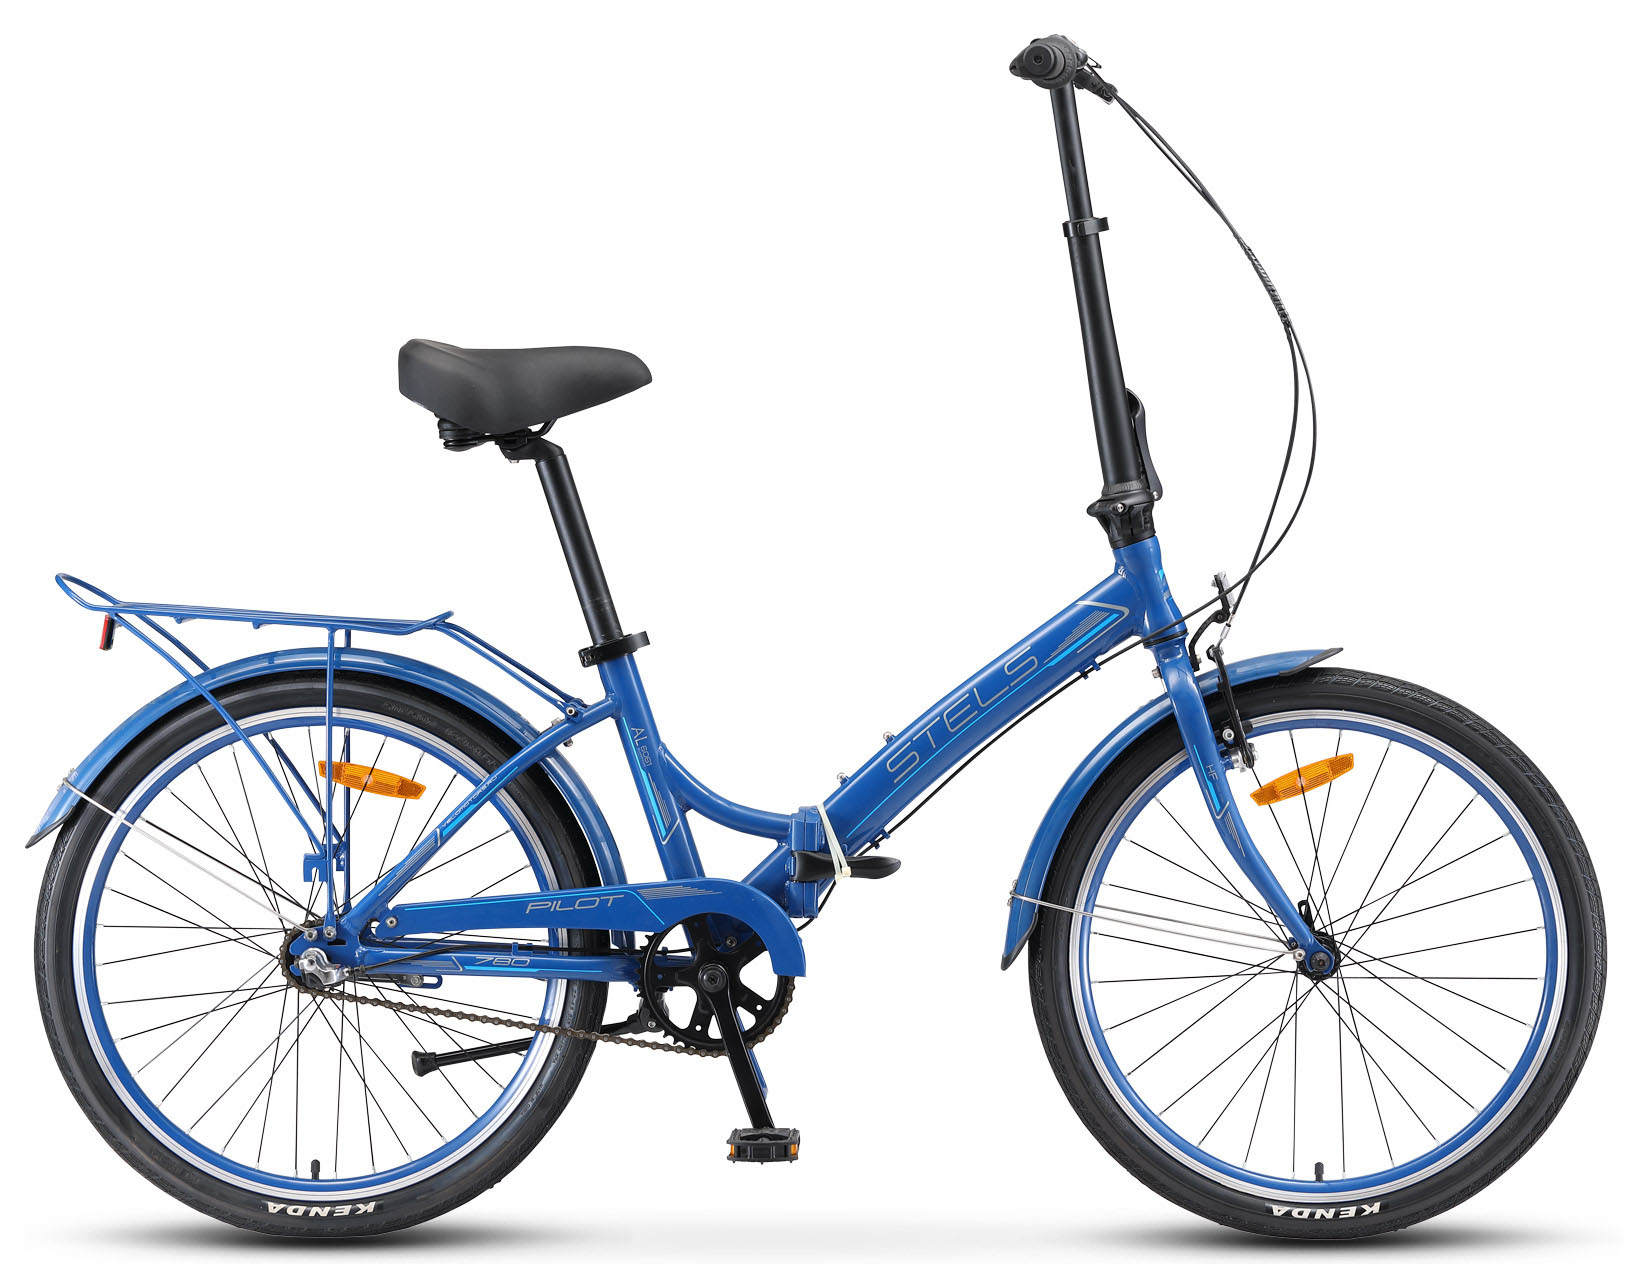  Отзывы о Складном велосипеде Stels Pilot 780 24 V010 2019